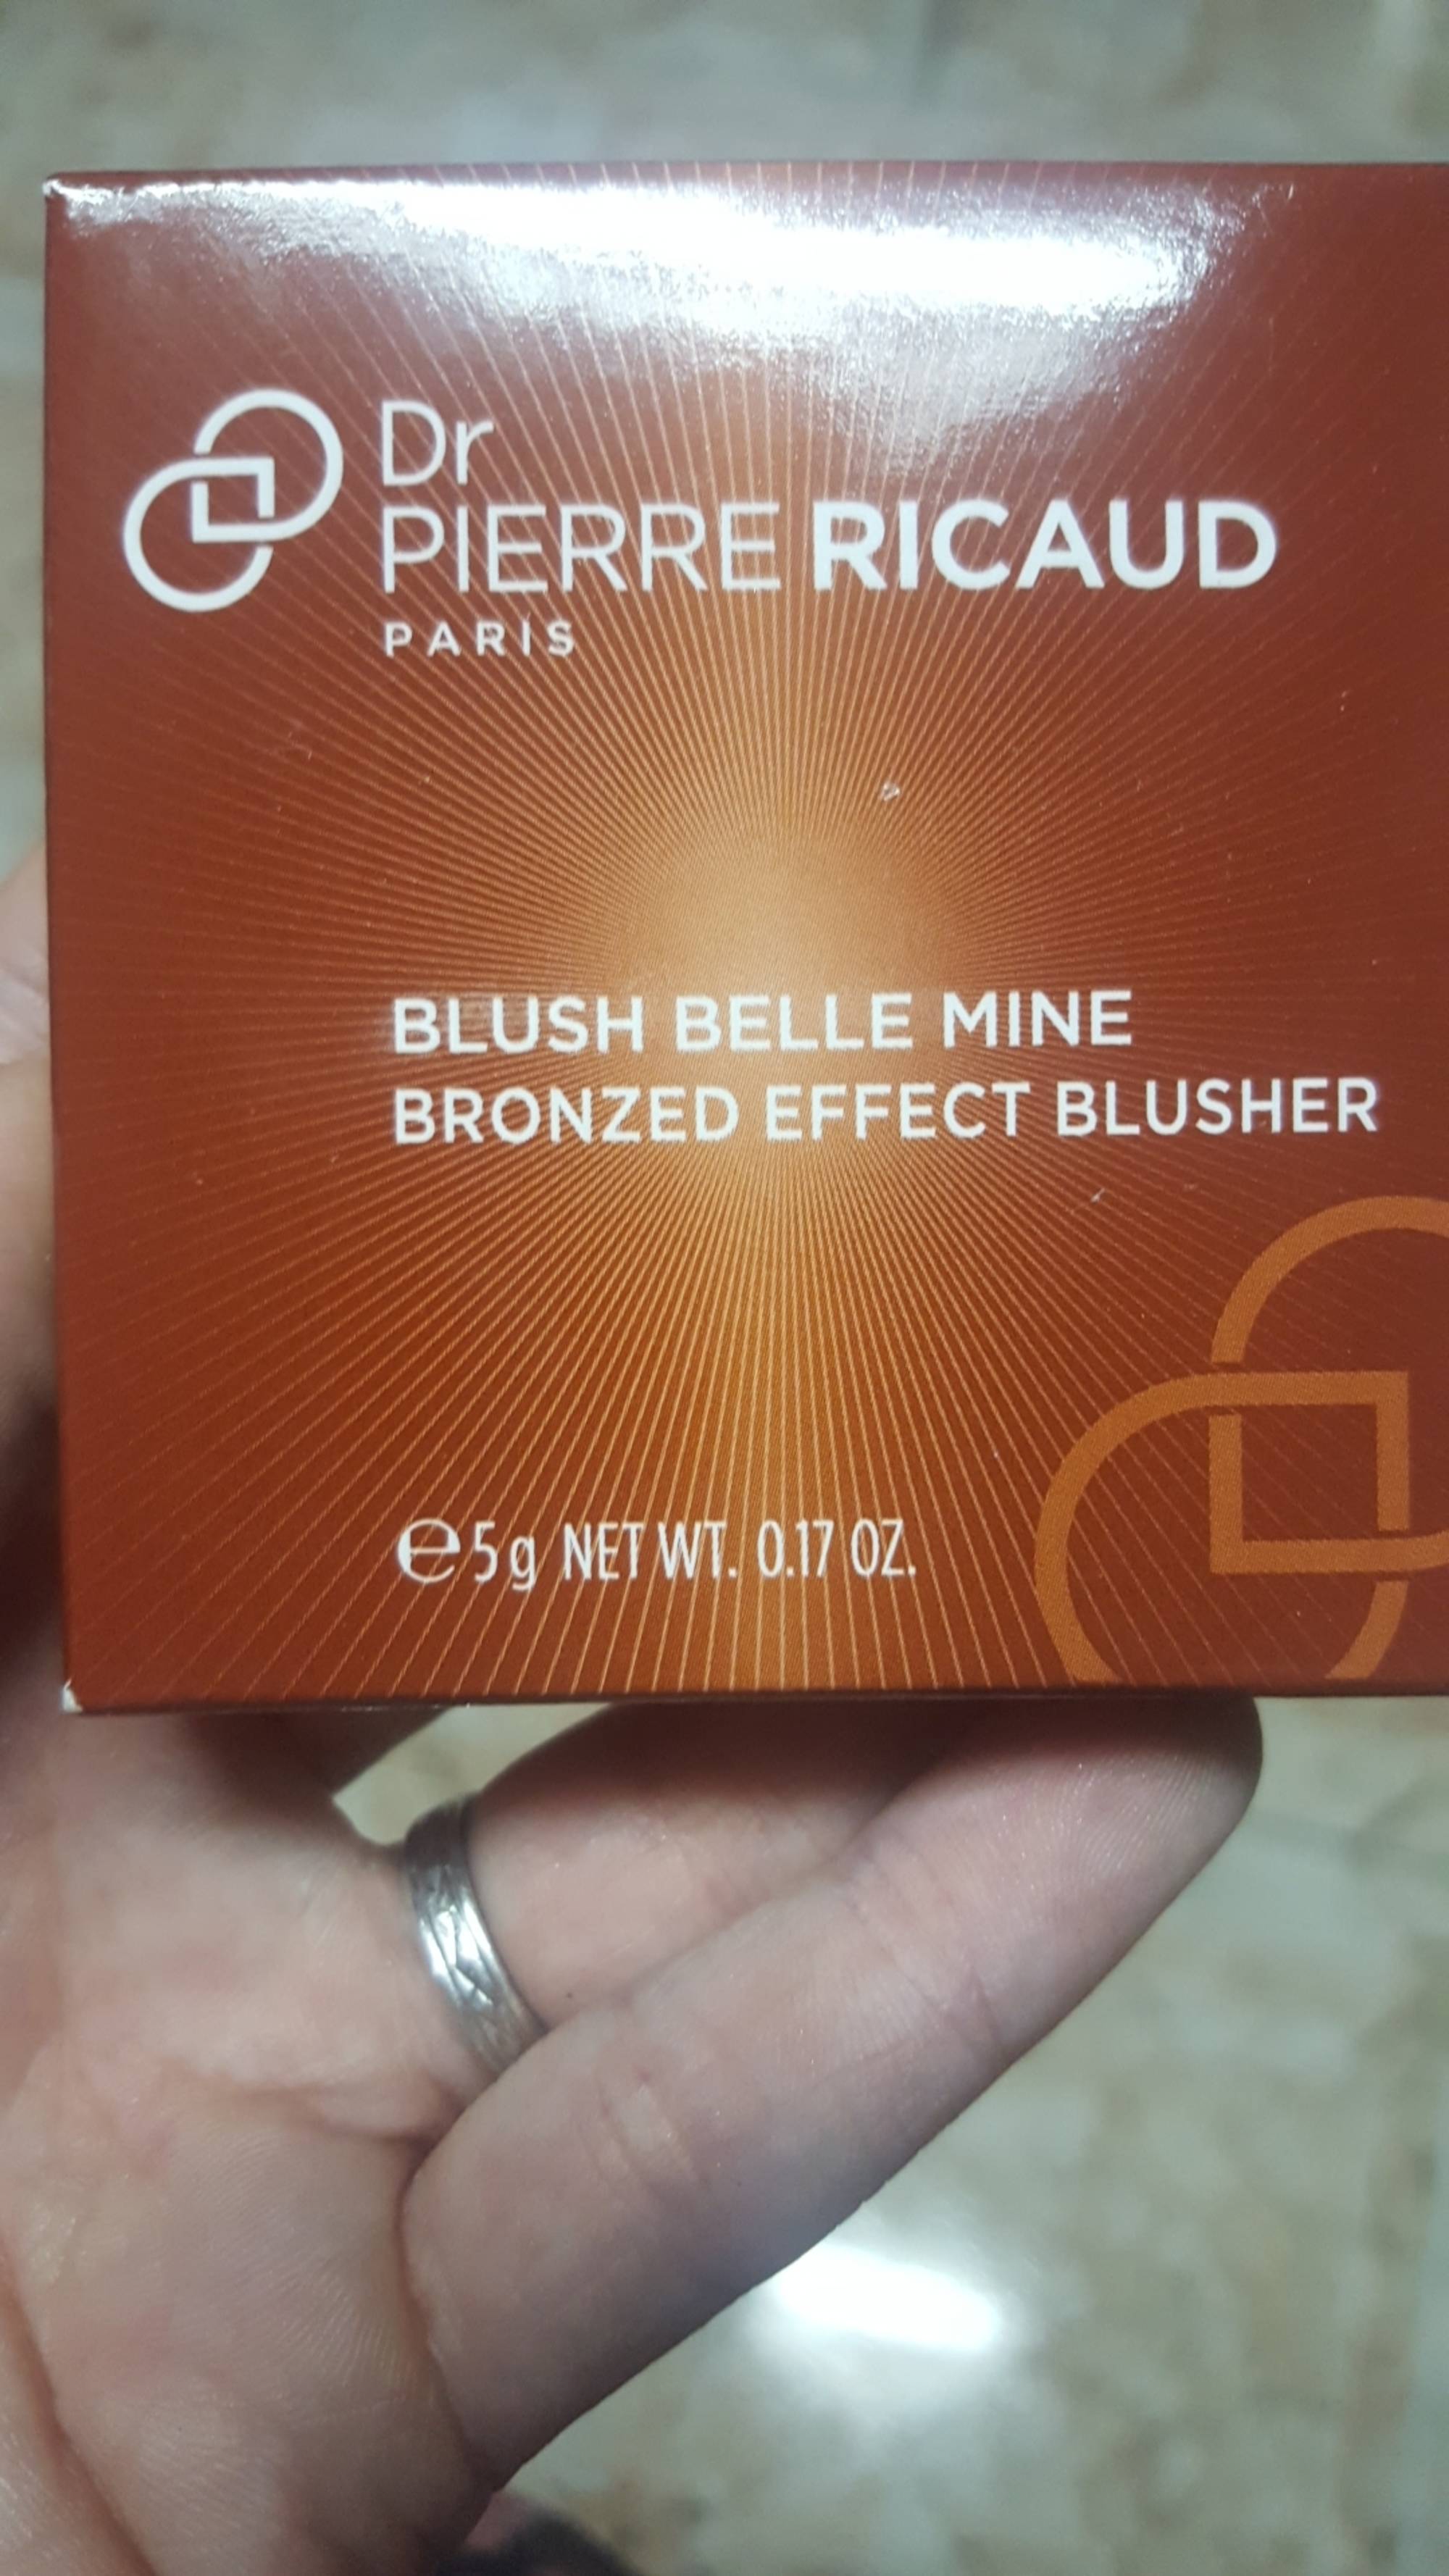 DR PIERRE RICAUD - Blush belle mine - Bronzed effect blusher 